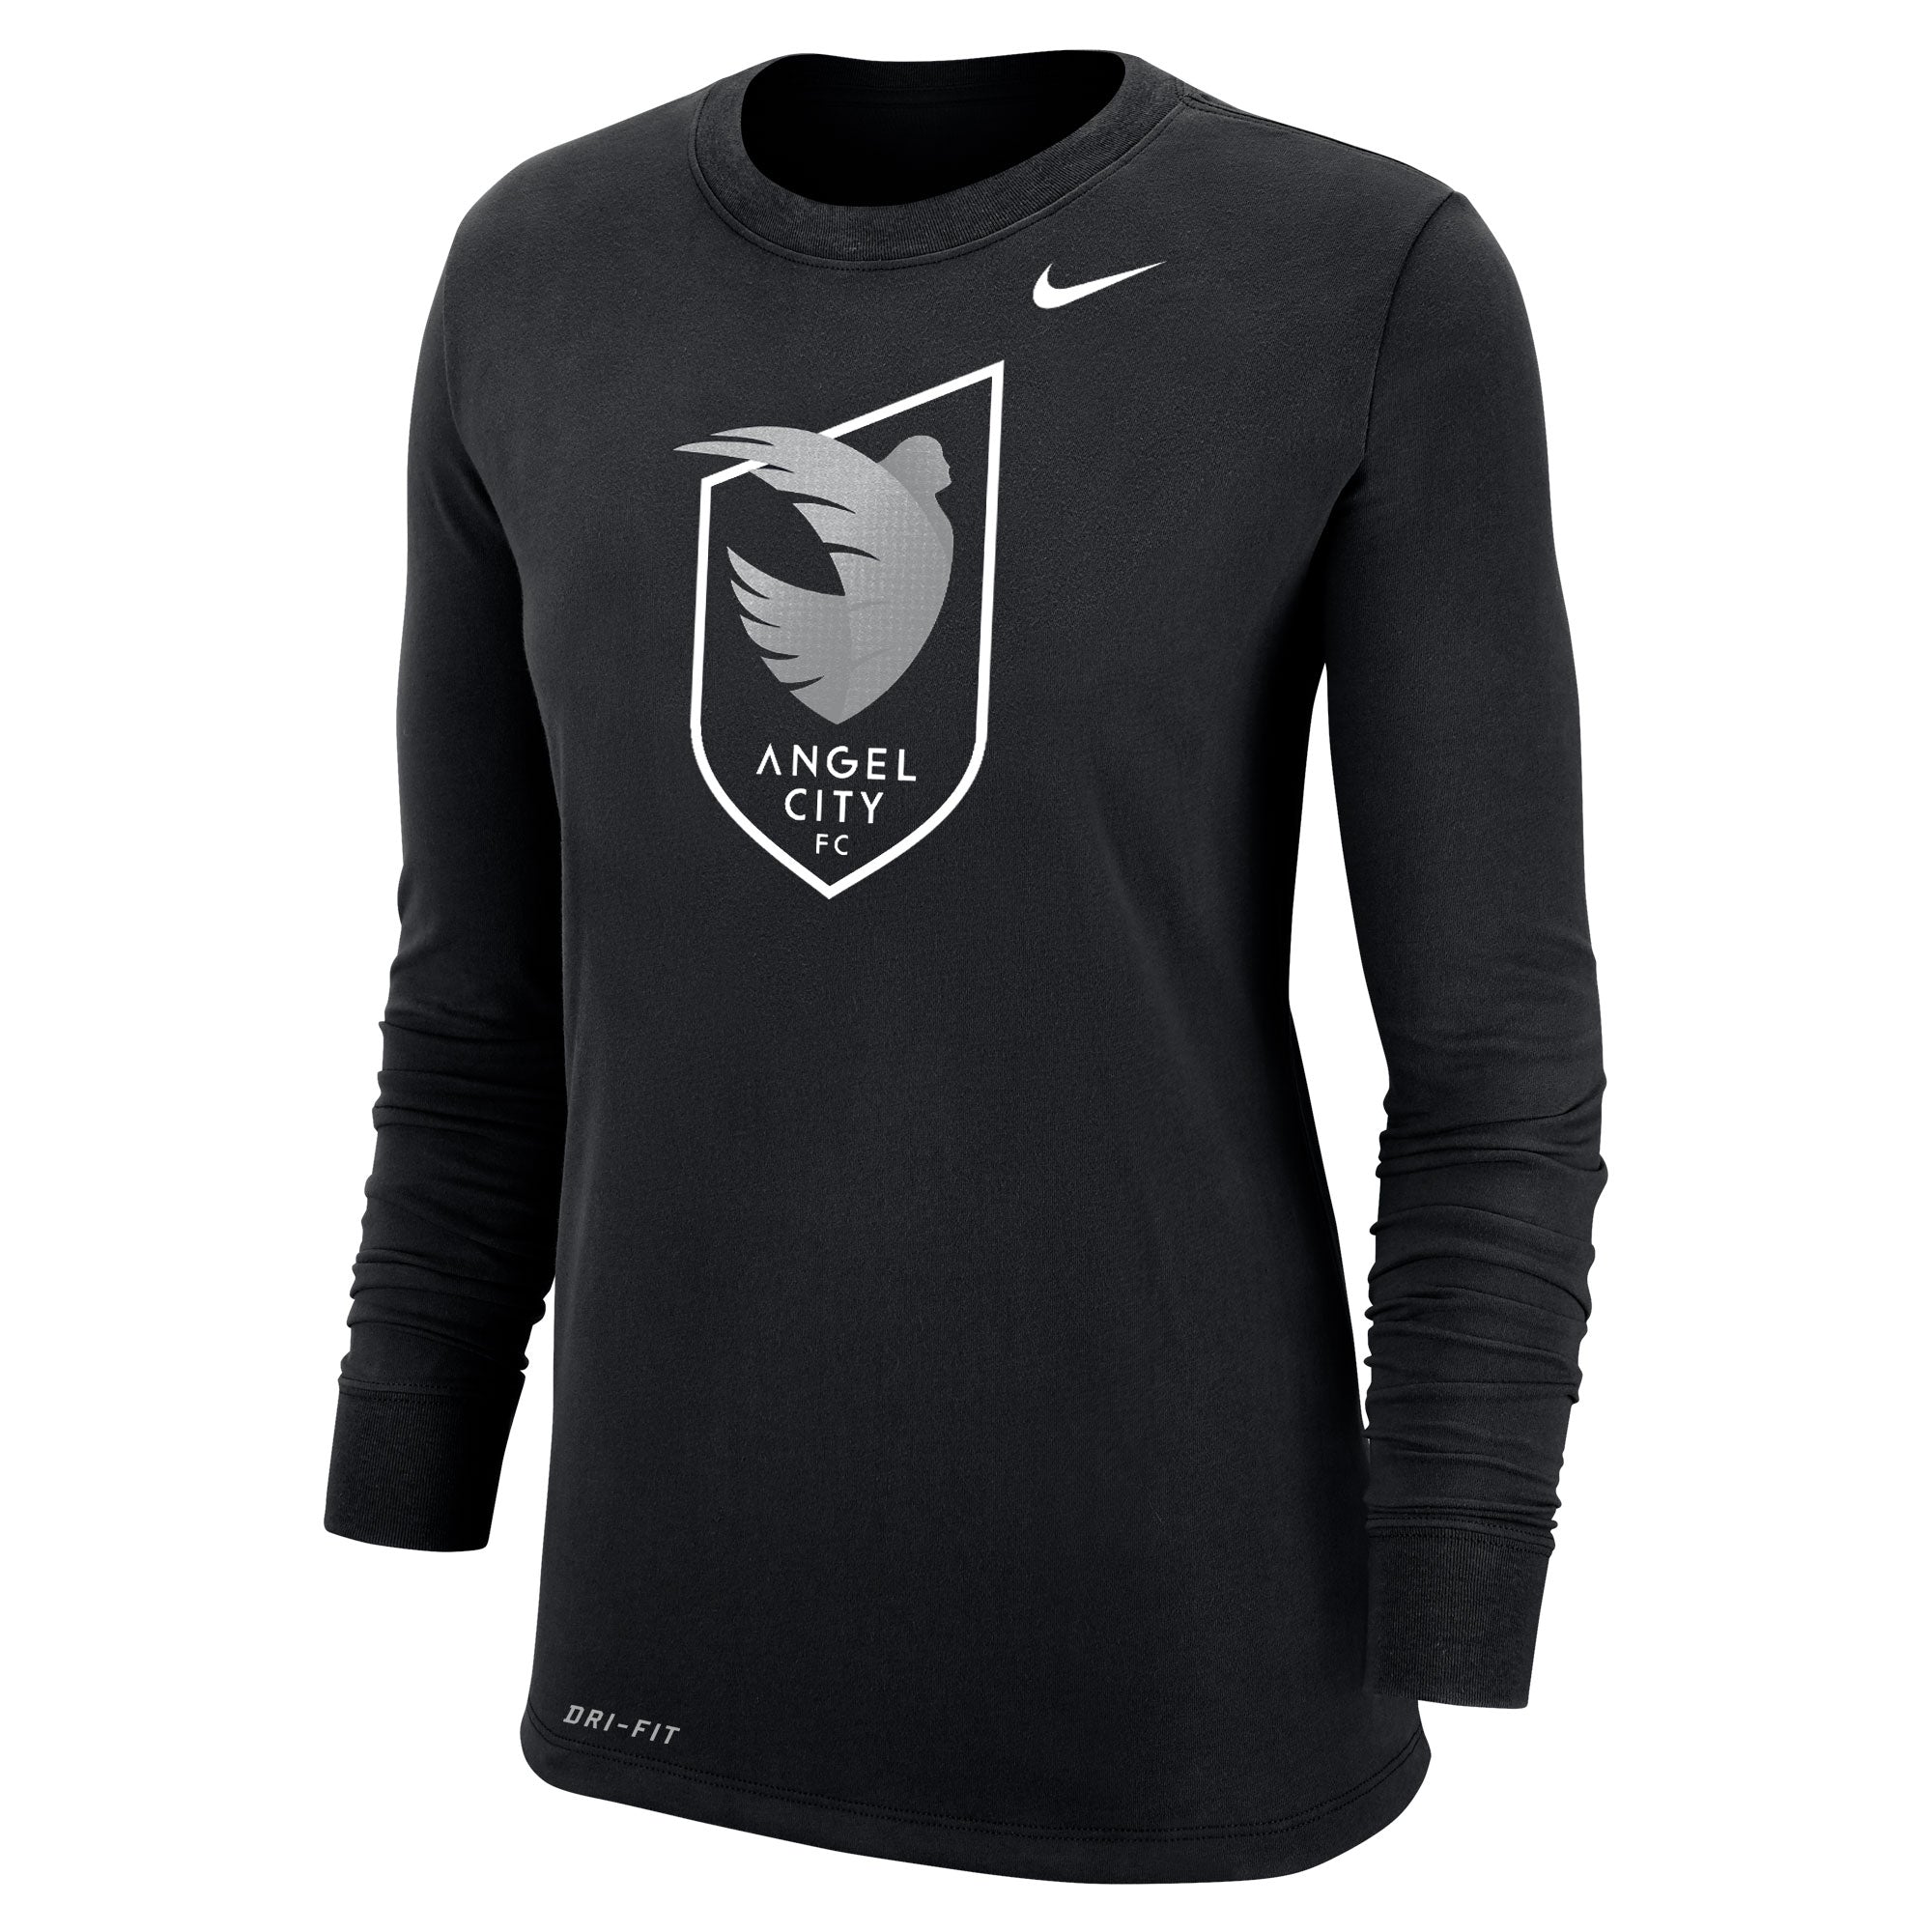 Angel City FC Nike - Camiseta de manga larga para mujer con escudo de armadura negra Dri-FIT